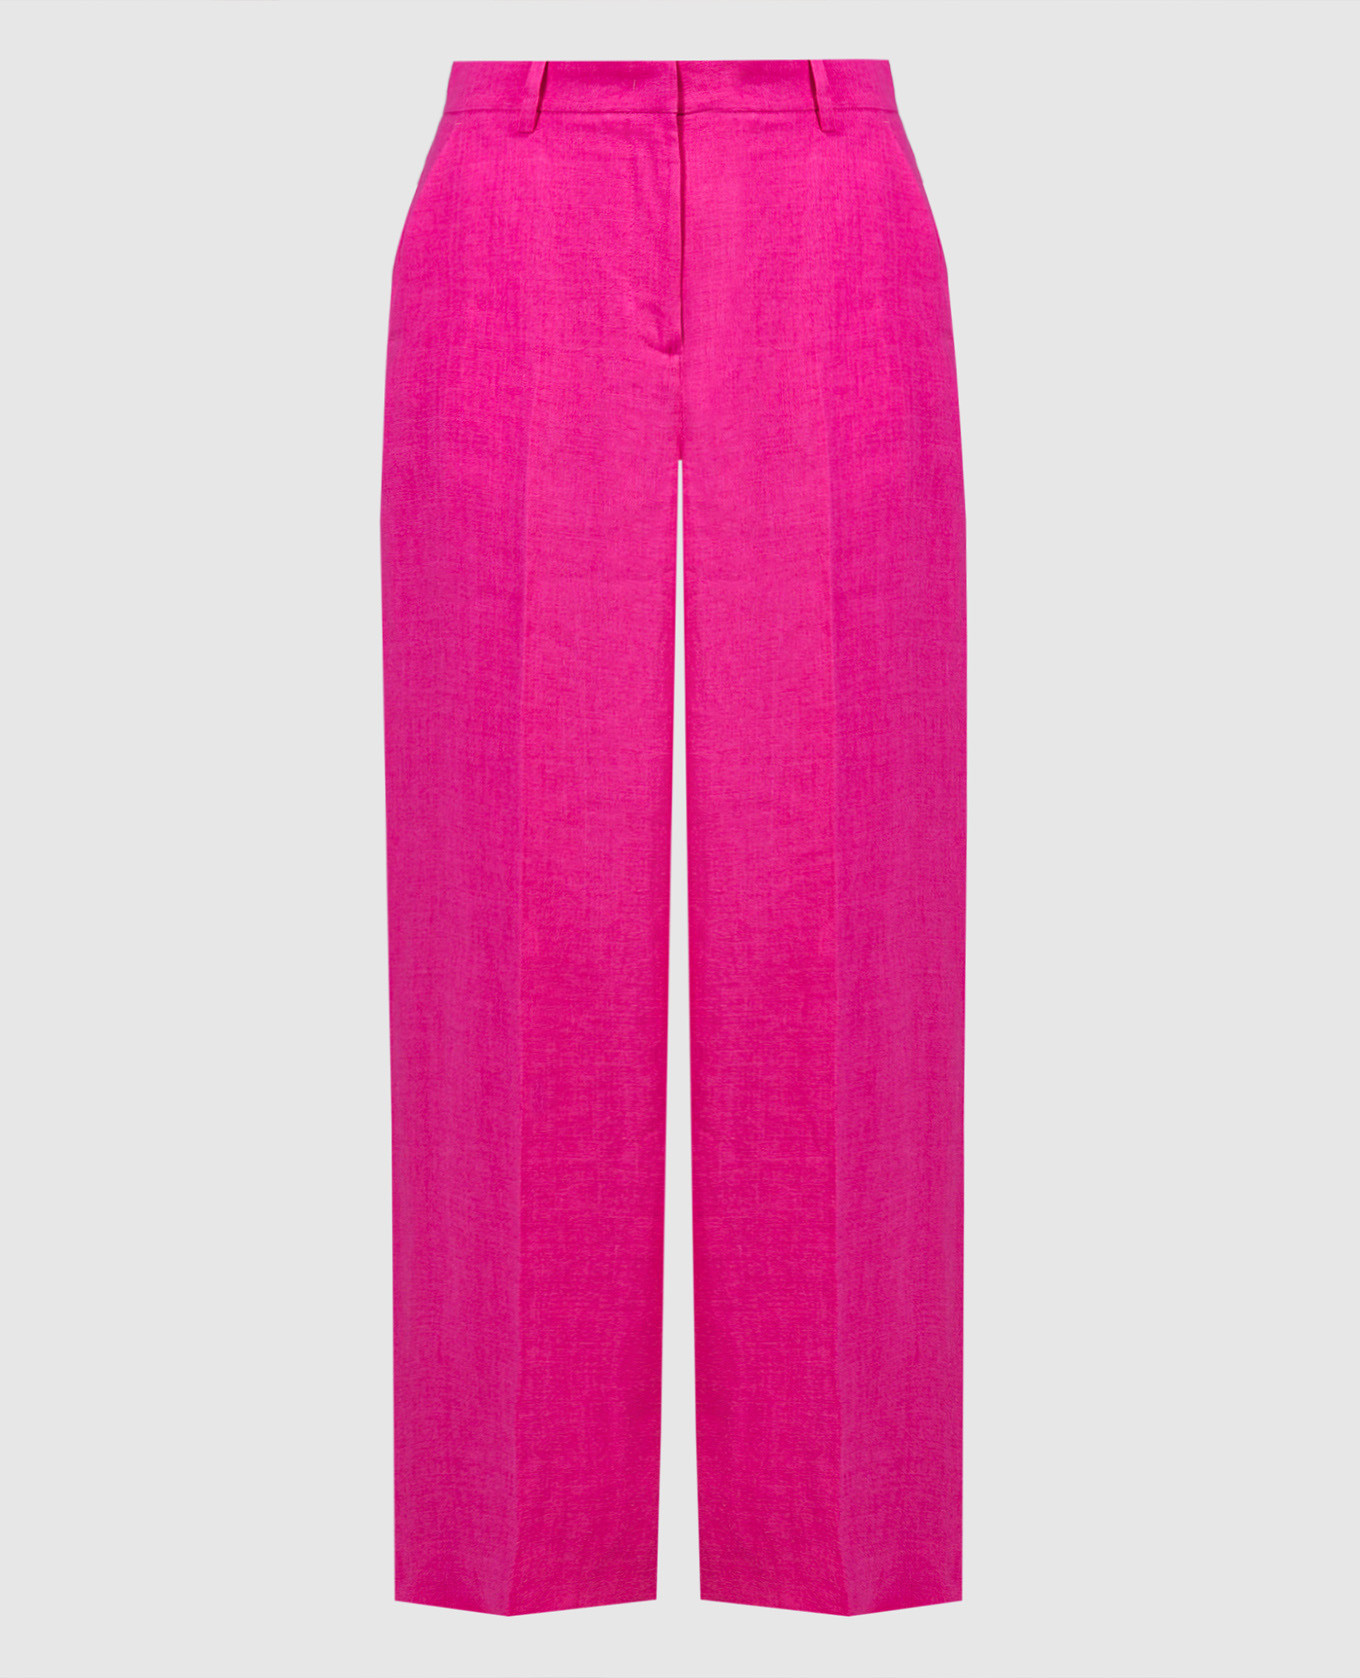 Розовые брюки Malizia из льна.